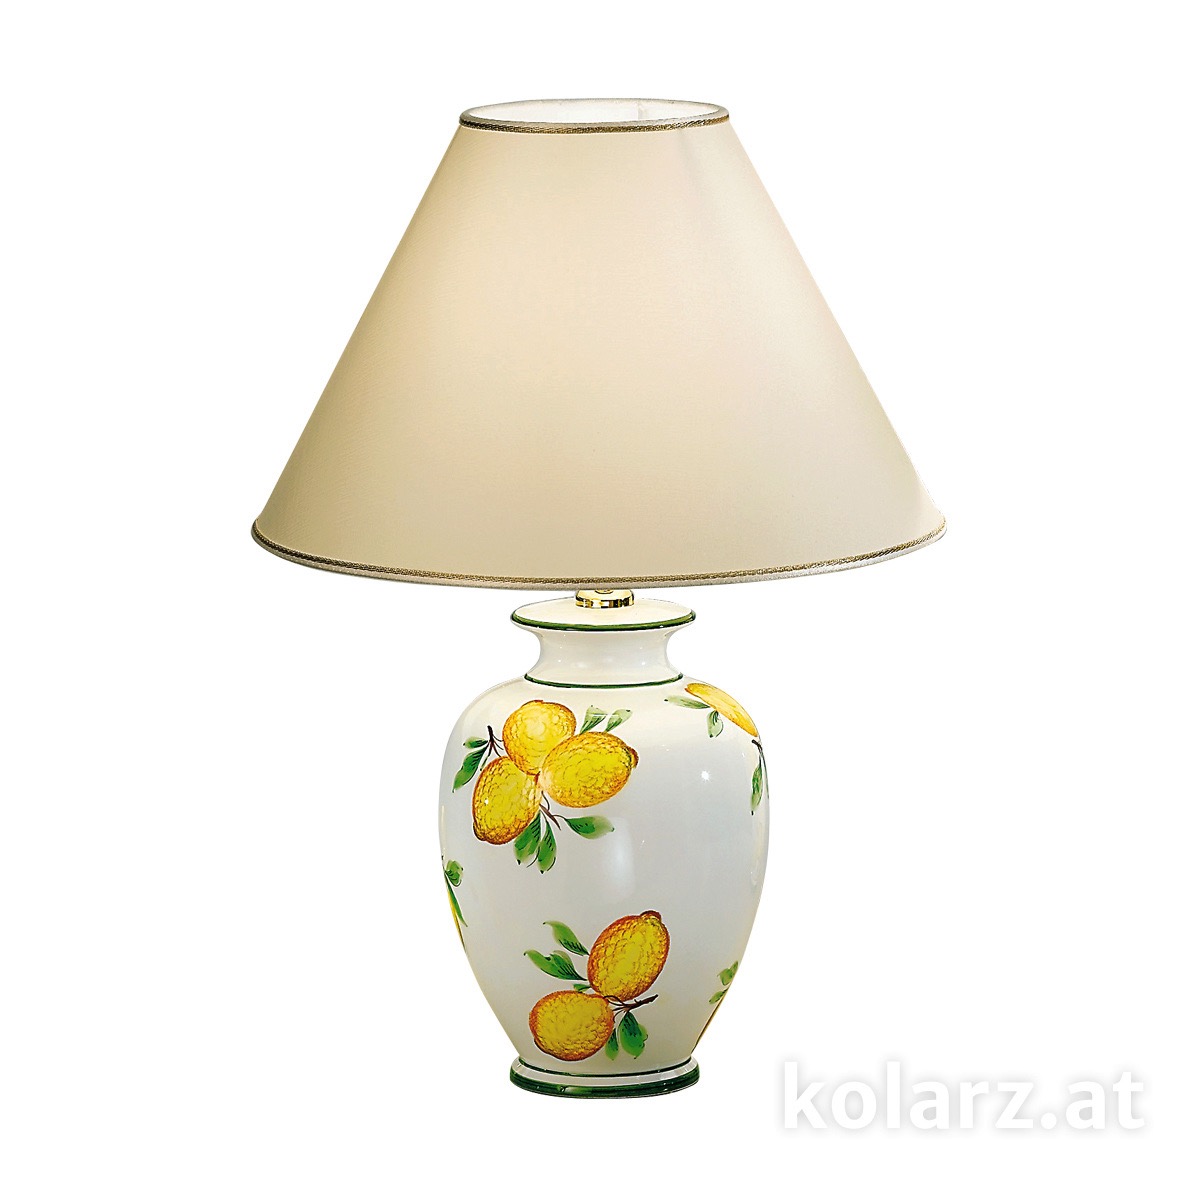 KOLARZ LeuchtenTischleuchte | table lamp Giardino -Limoni